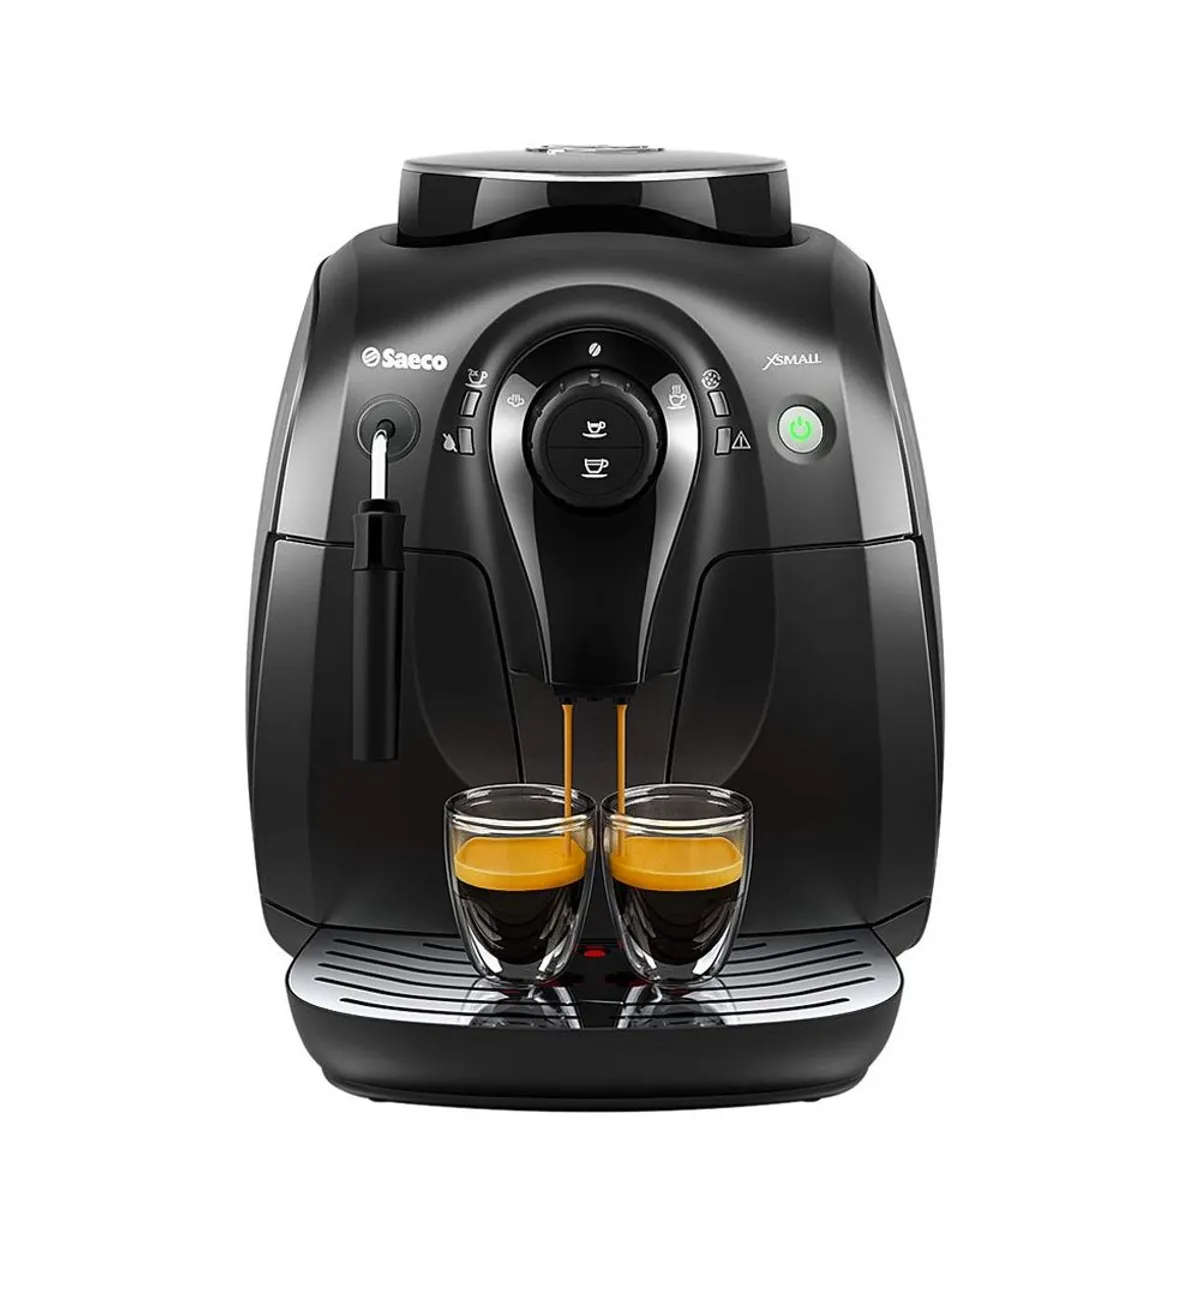 Saeco Vapore Automatic Espresso Machine review